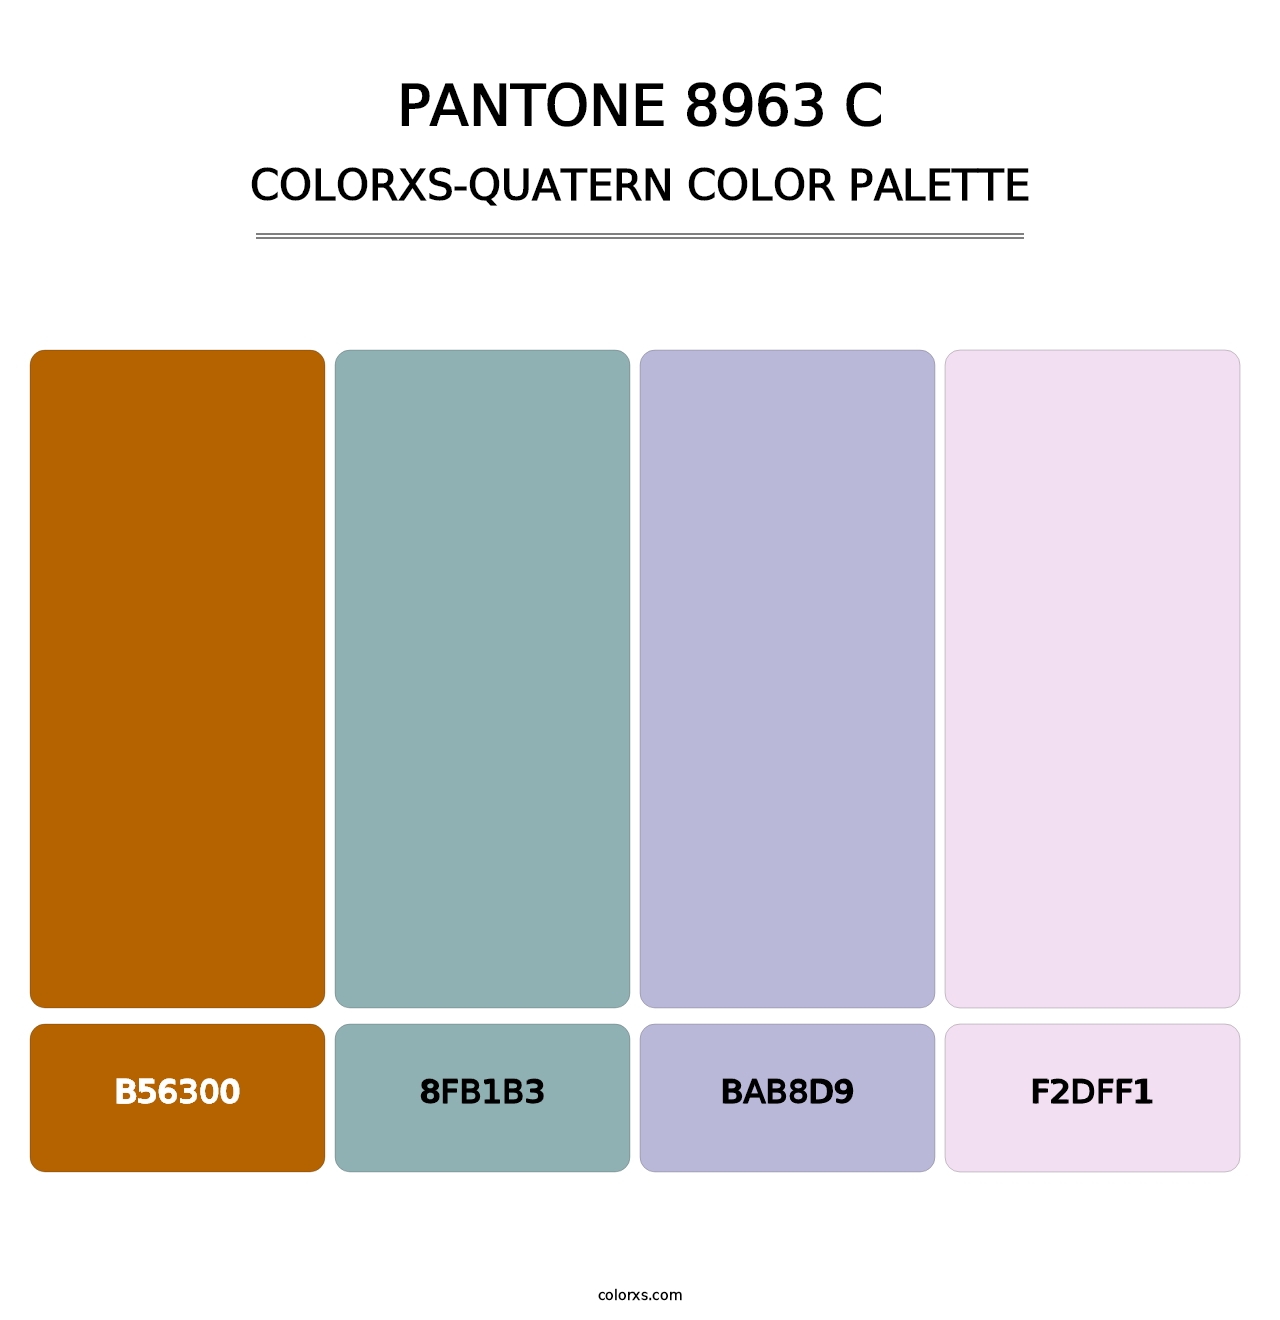 PANTONE 8963 C - Colorxs Quatern Palette